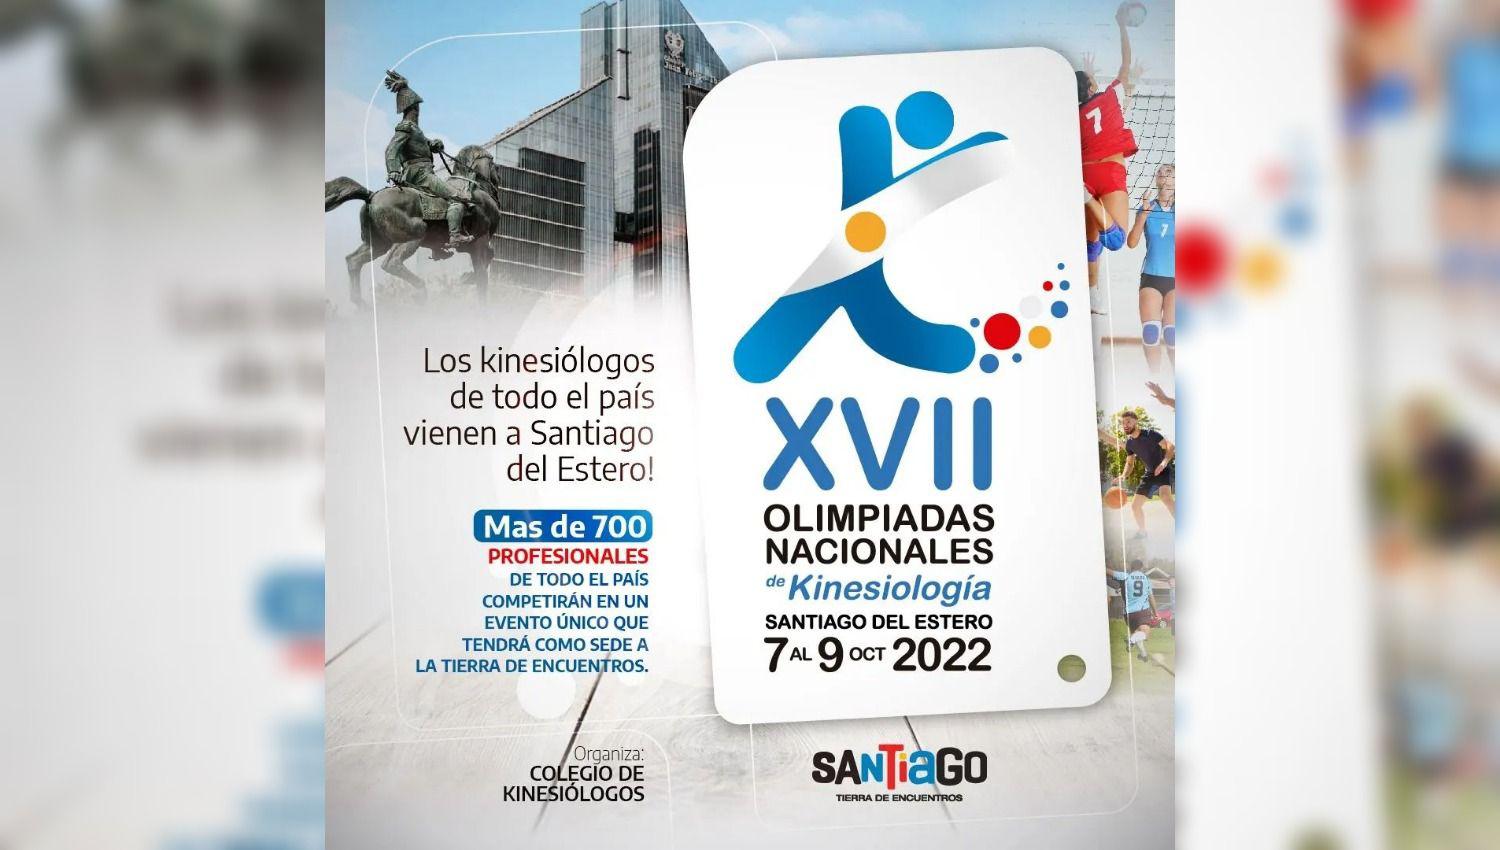 Santiago del Estero seraacute sede las olimpiadas nacionales de kinesiologiacutea